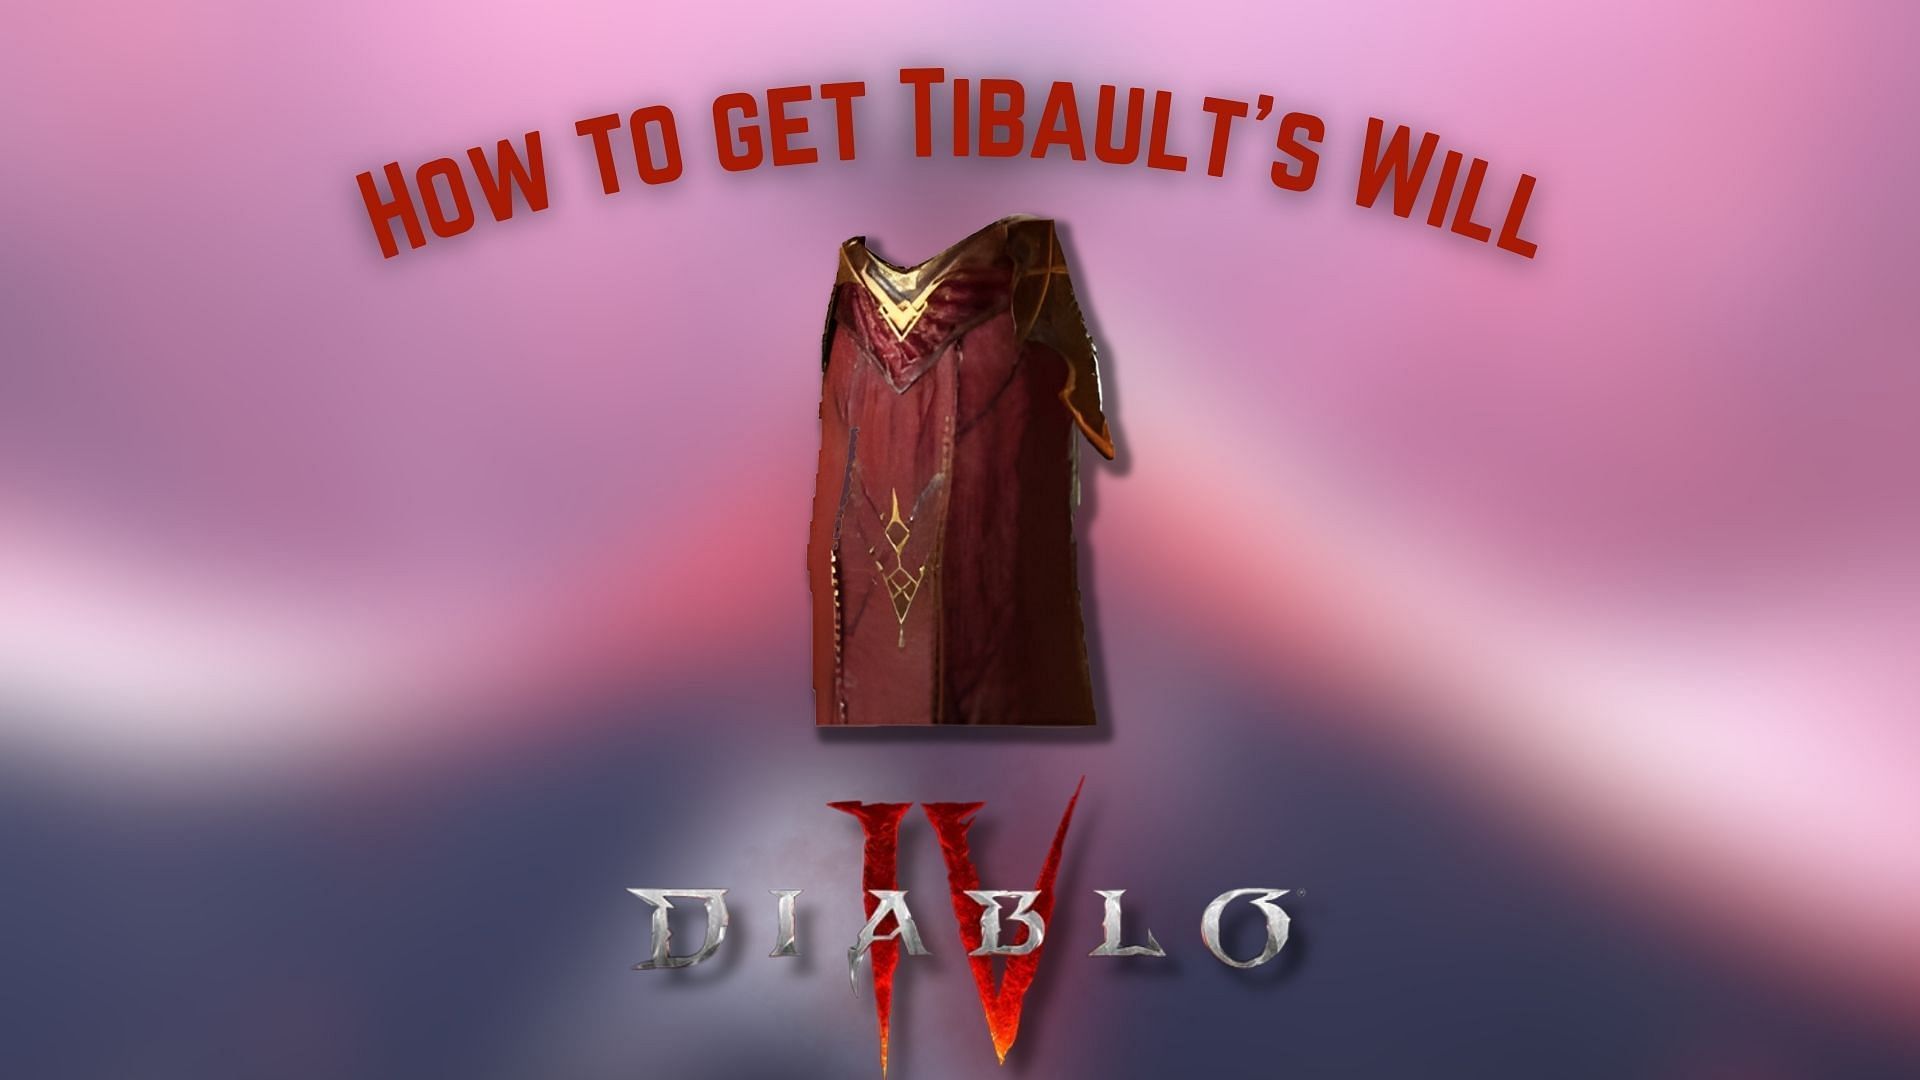 ways to get Tibault